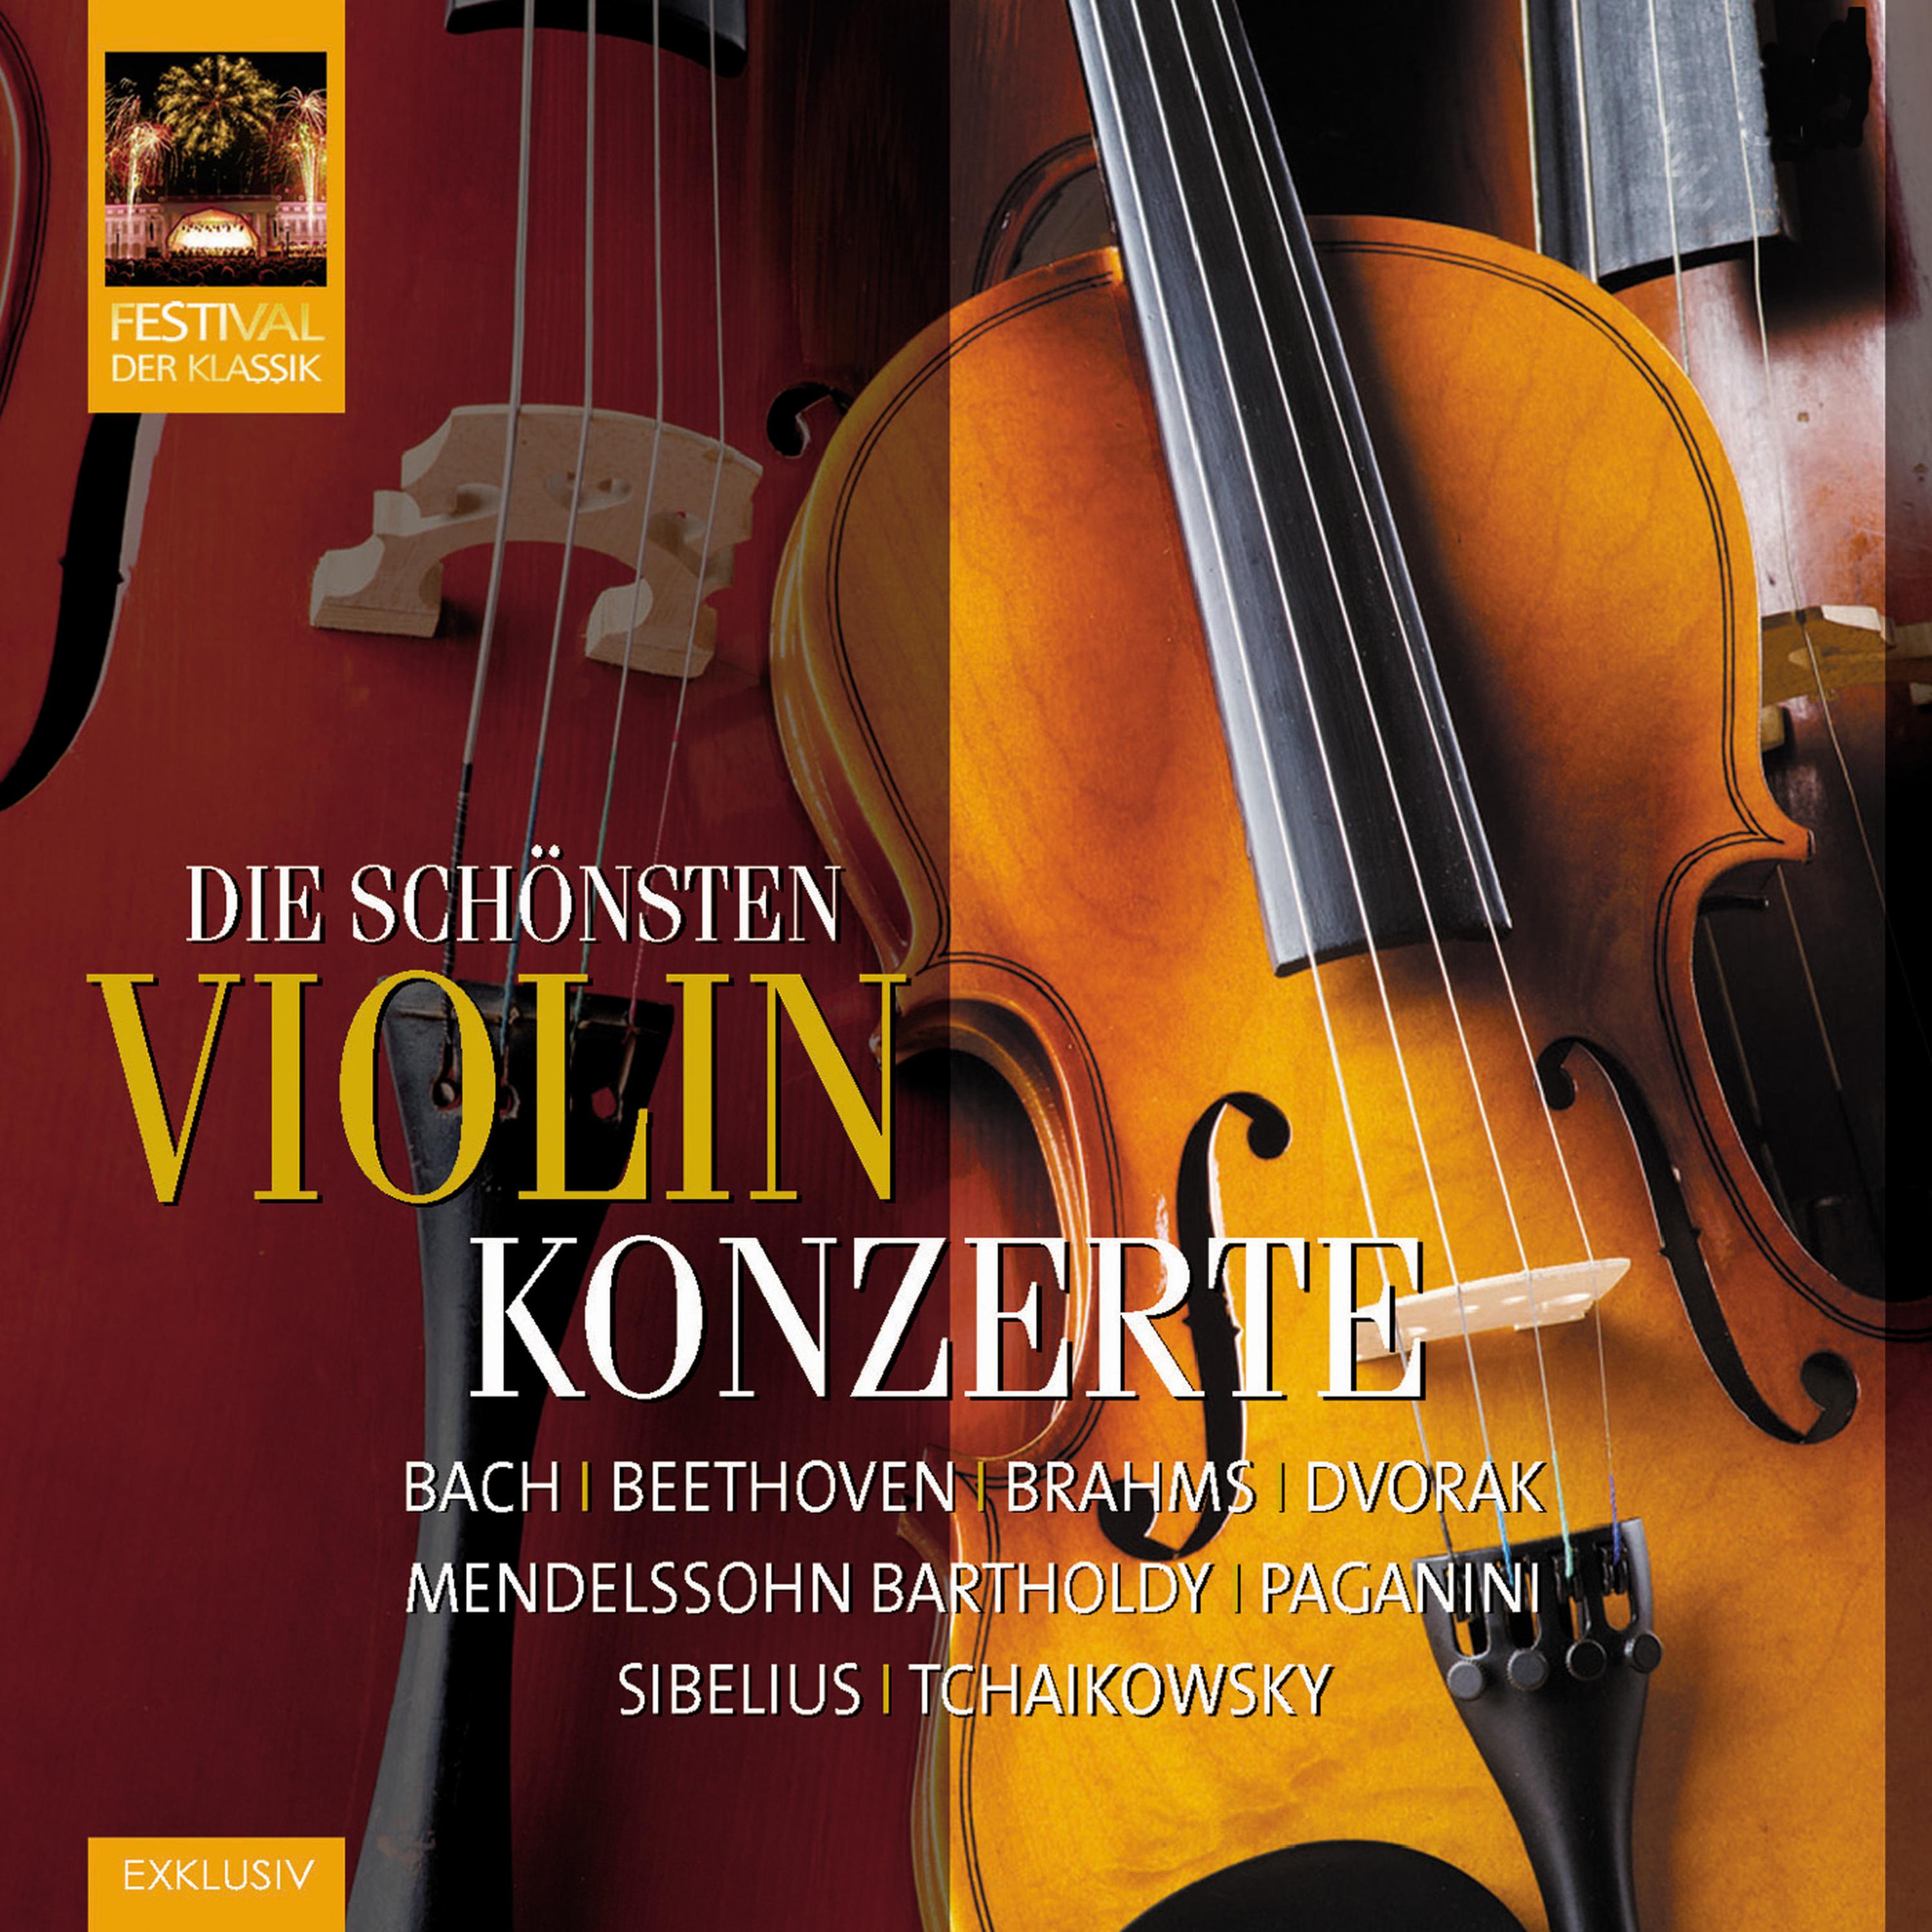 Violinkonzert in D Major, Op. 35: I. Allegro moderato